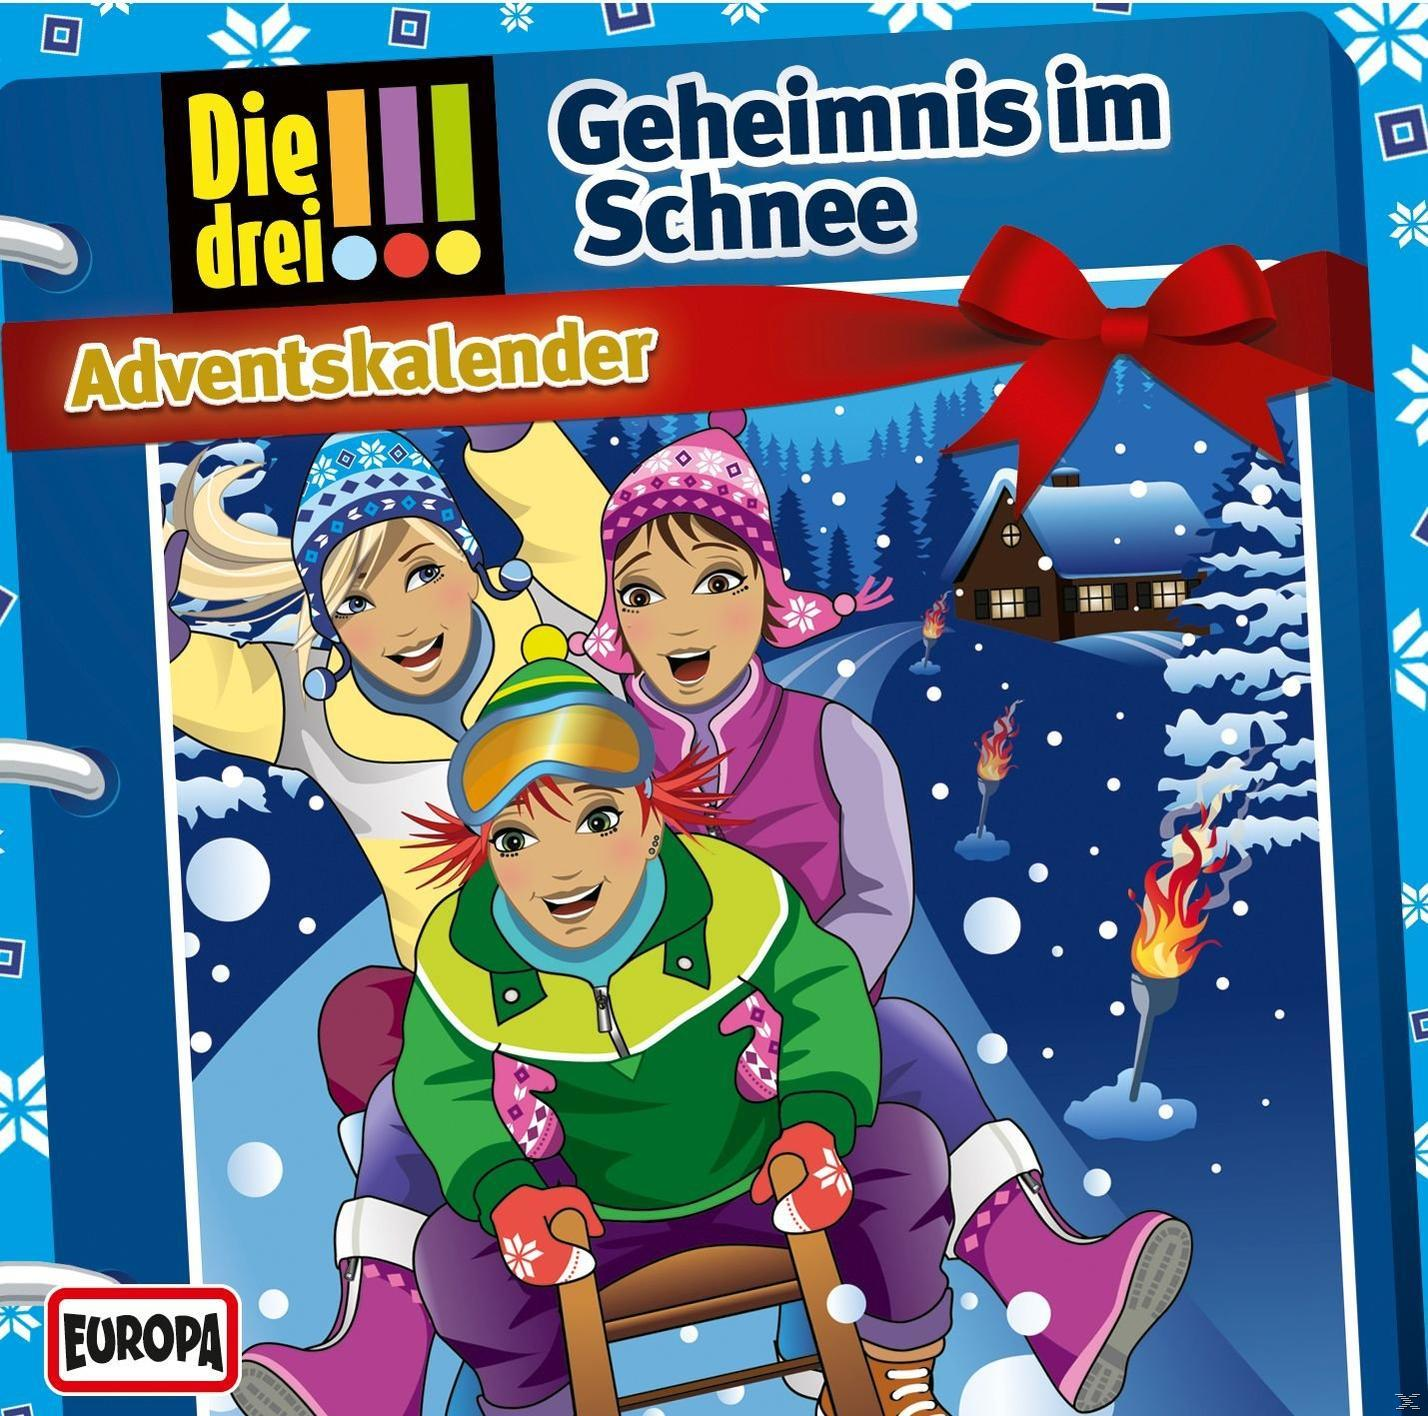 Die Drei - ??? Adventskalender 2015: im Die (CD) Geheimnis Schnee - drei !!! 